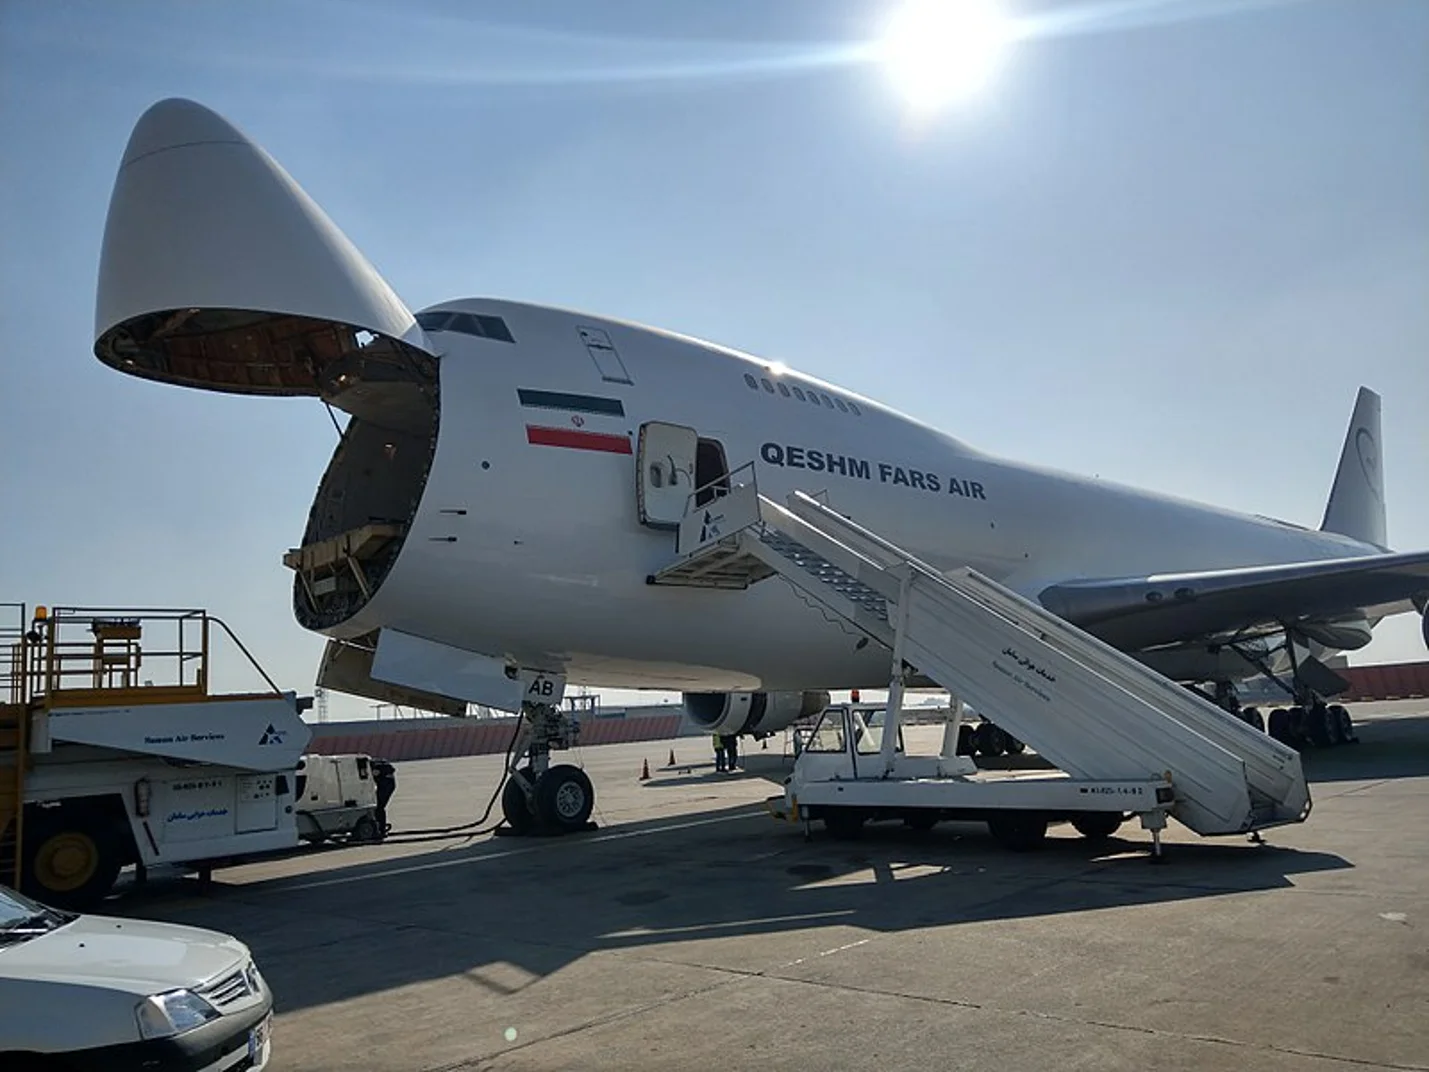 Uno de los aviones de carga de Qeshm Fars Air, subsidiaria de Mahan Air, en el aeropuerto de Beirut, tras entregar un transporte de armas destinado al Hezbollah.